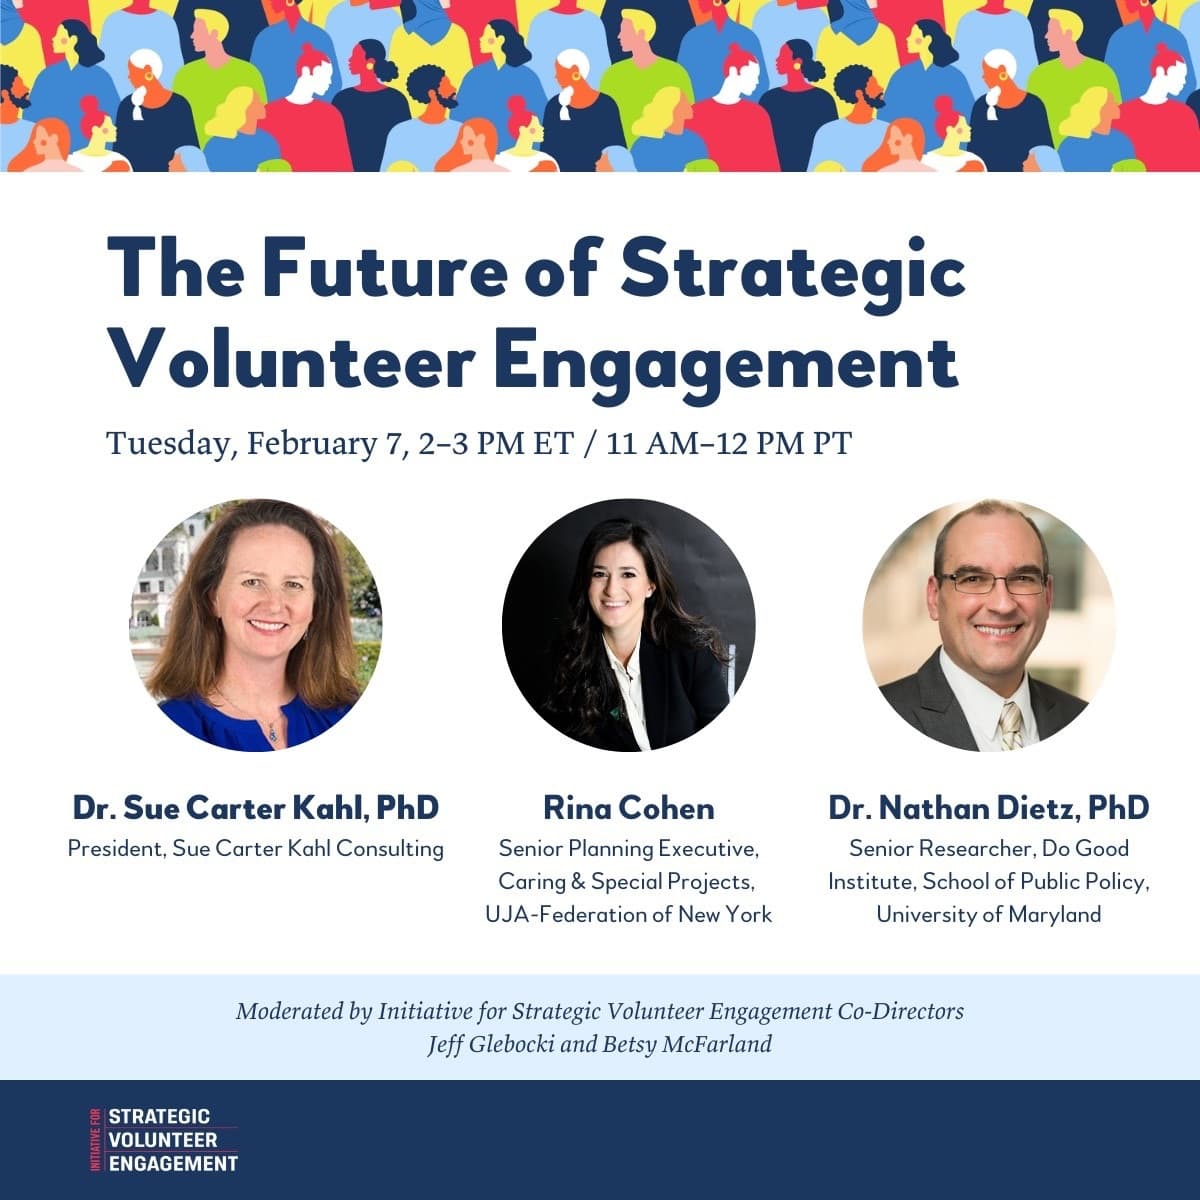 The Future of Strategic Volunteer Engagement